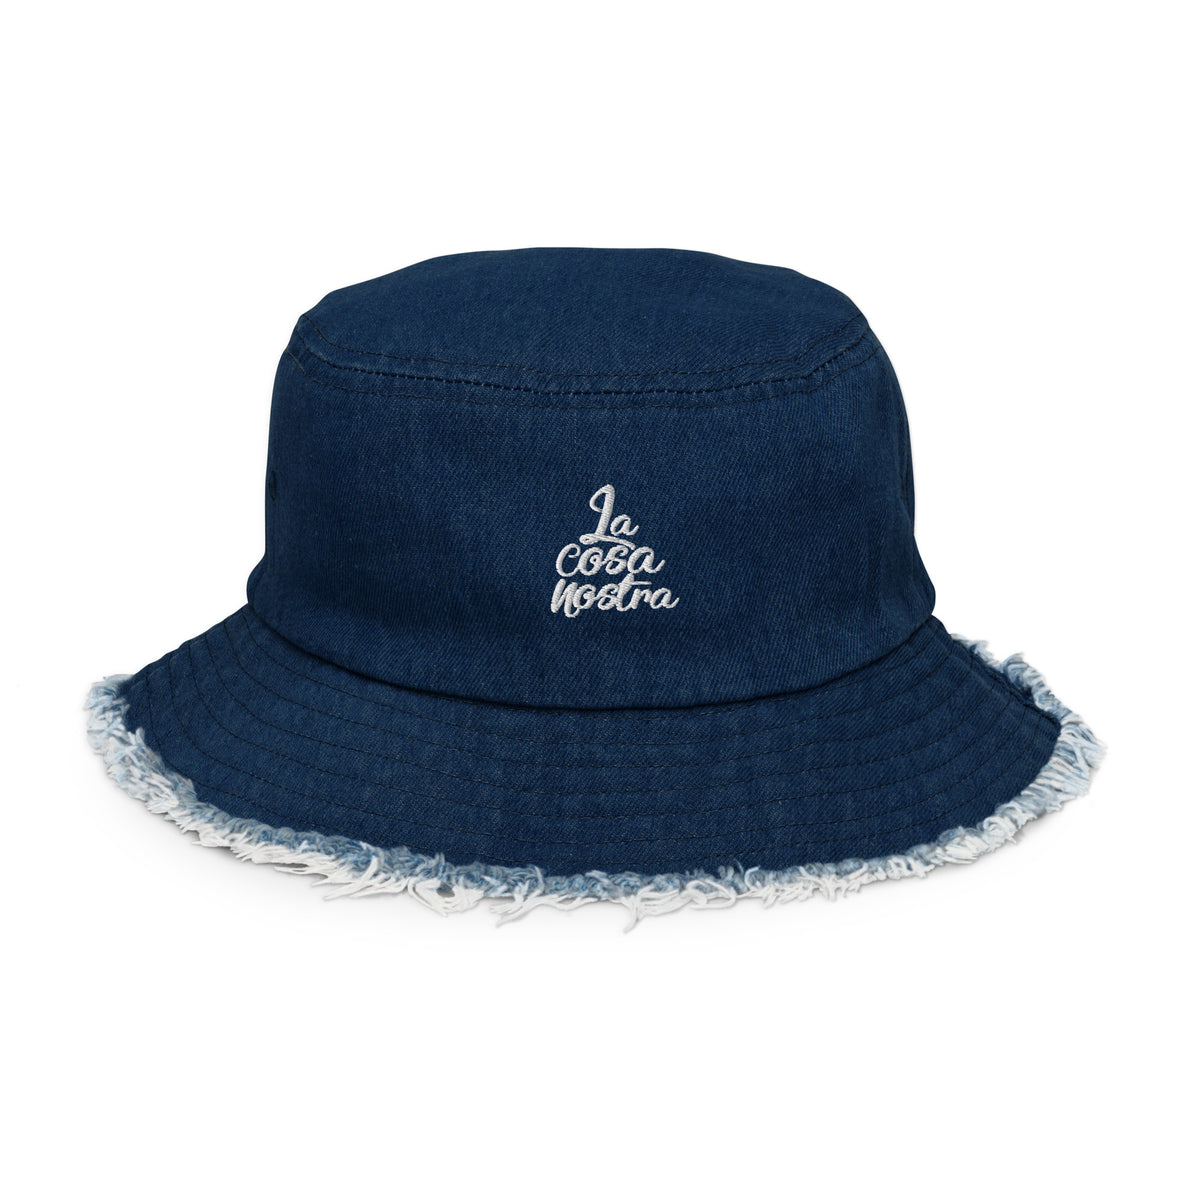 La Cosa Nostra Distressed denim bucket hat